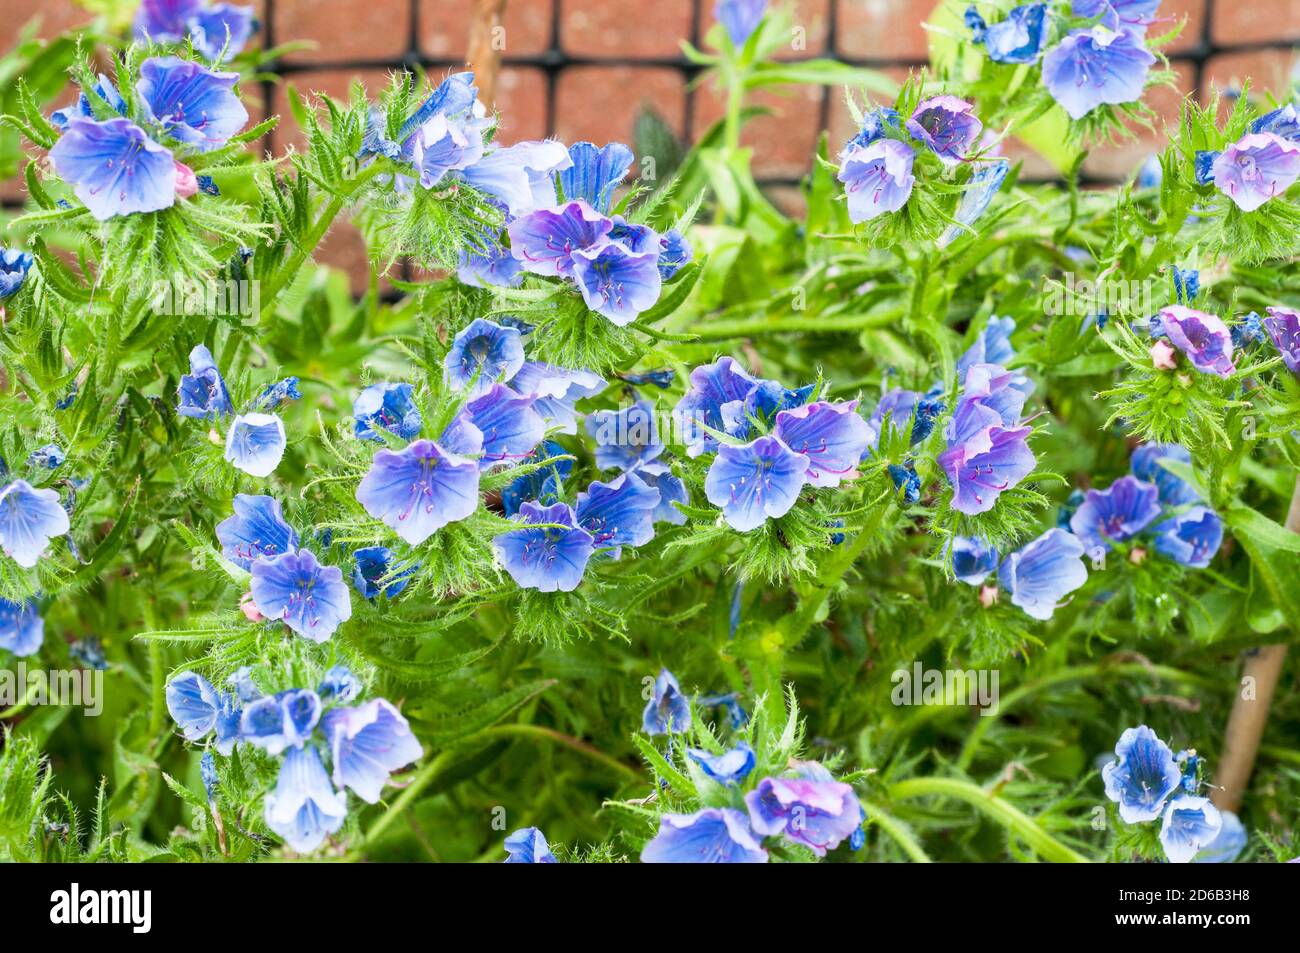 Primer plano de Echium vulgare Azul Bedder Vipers brillo un año duro - bienal con flores azules en verano que se auto semillas profusamente si se deja. Foto de stock